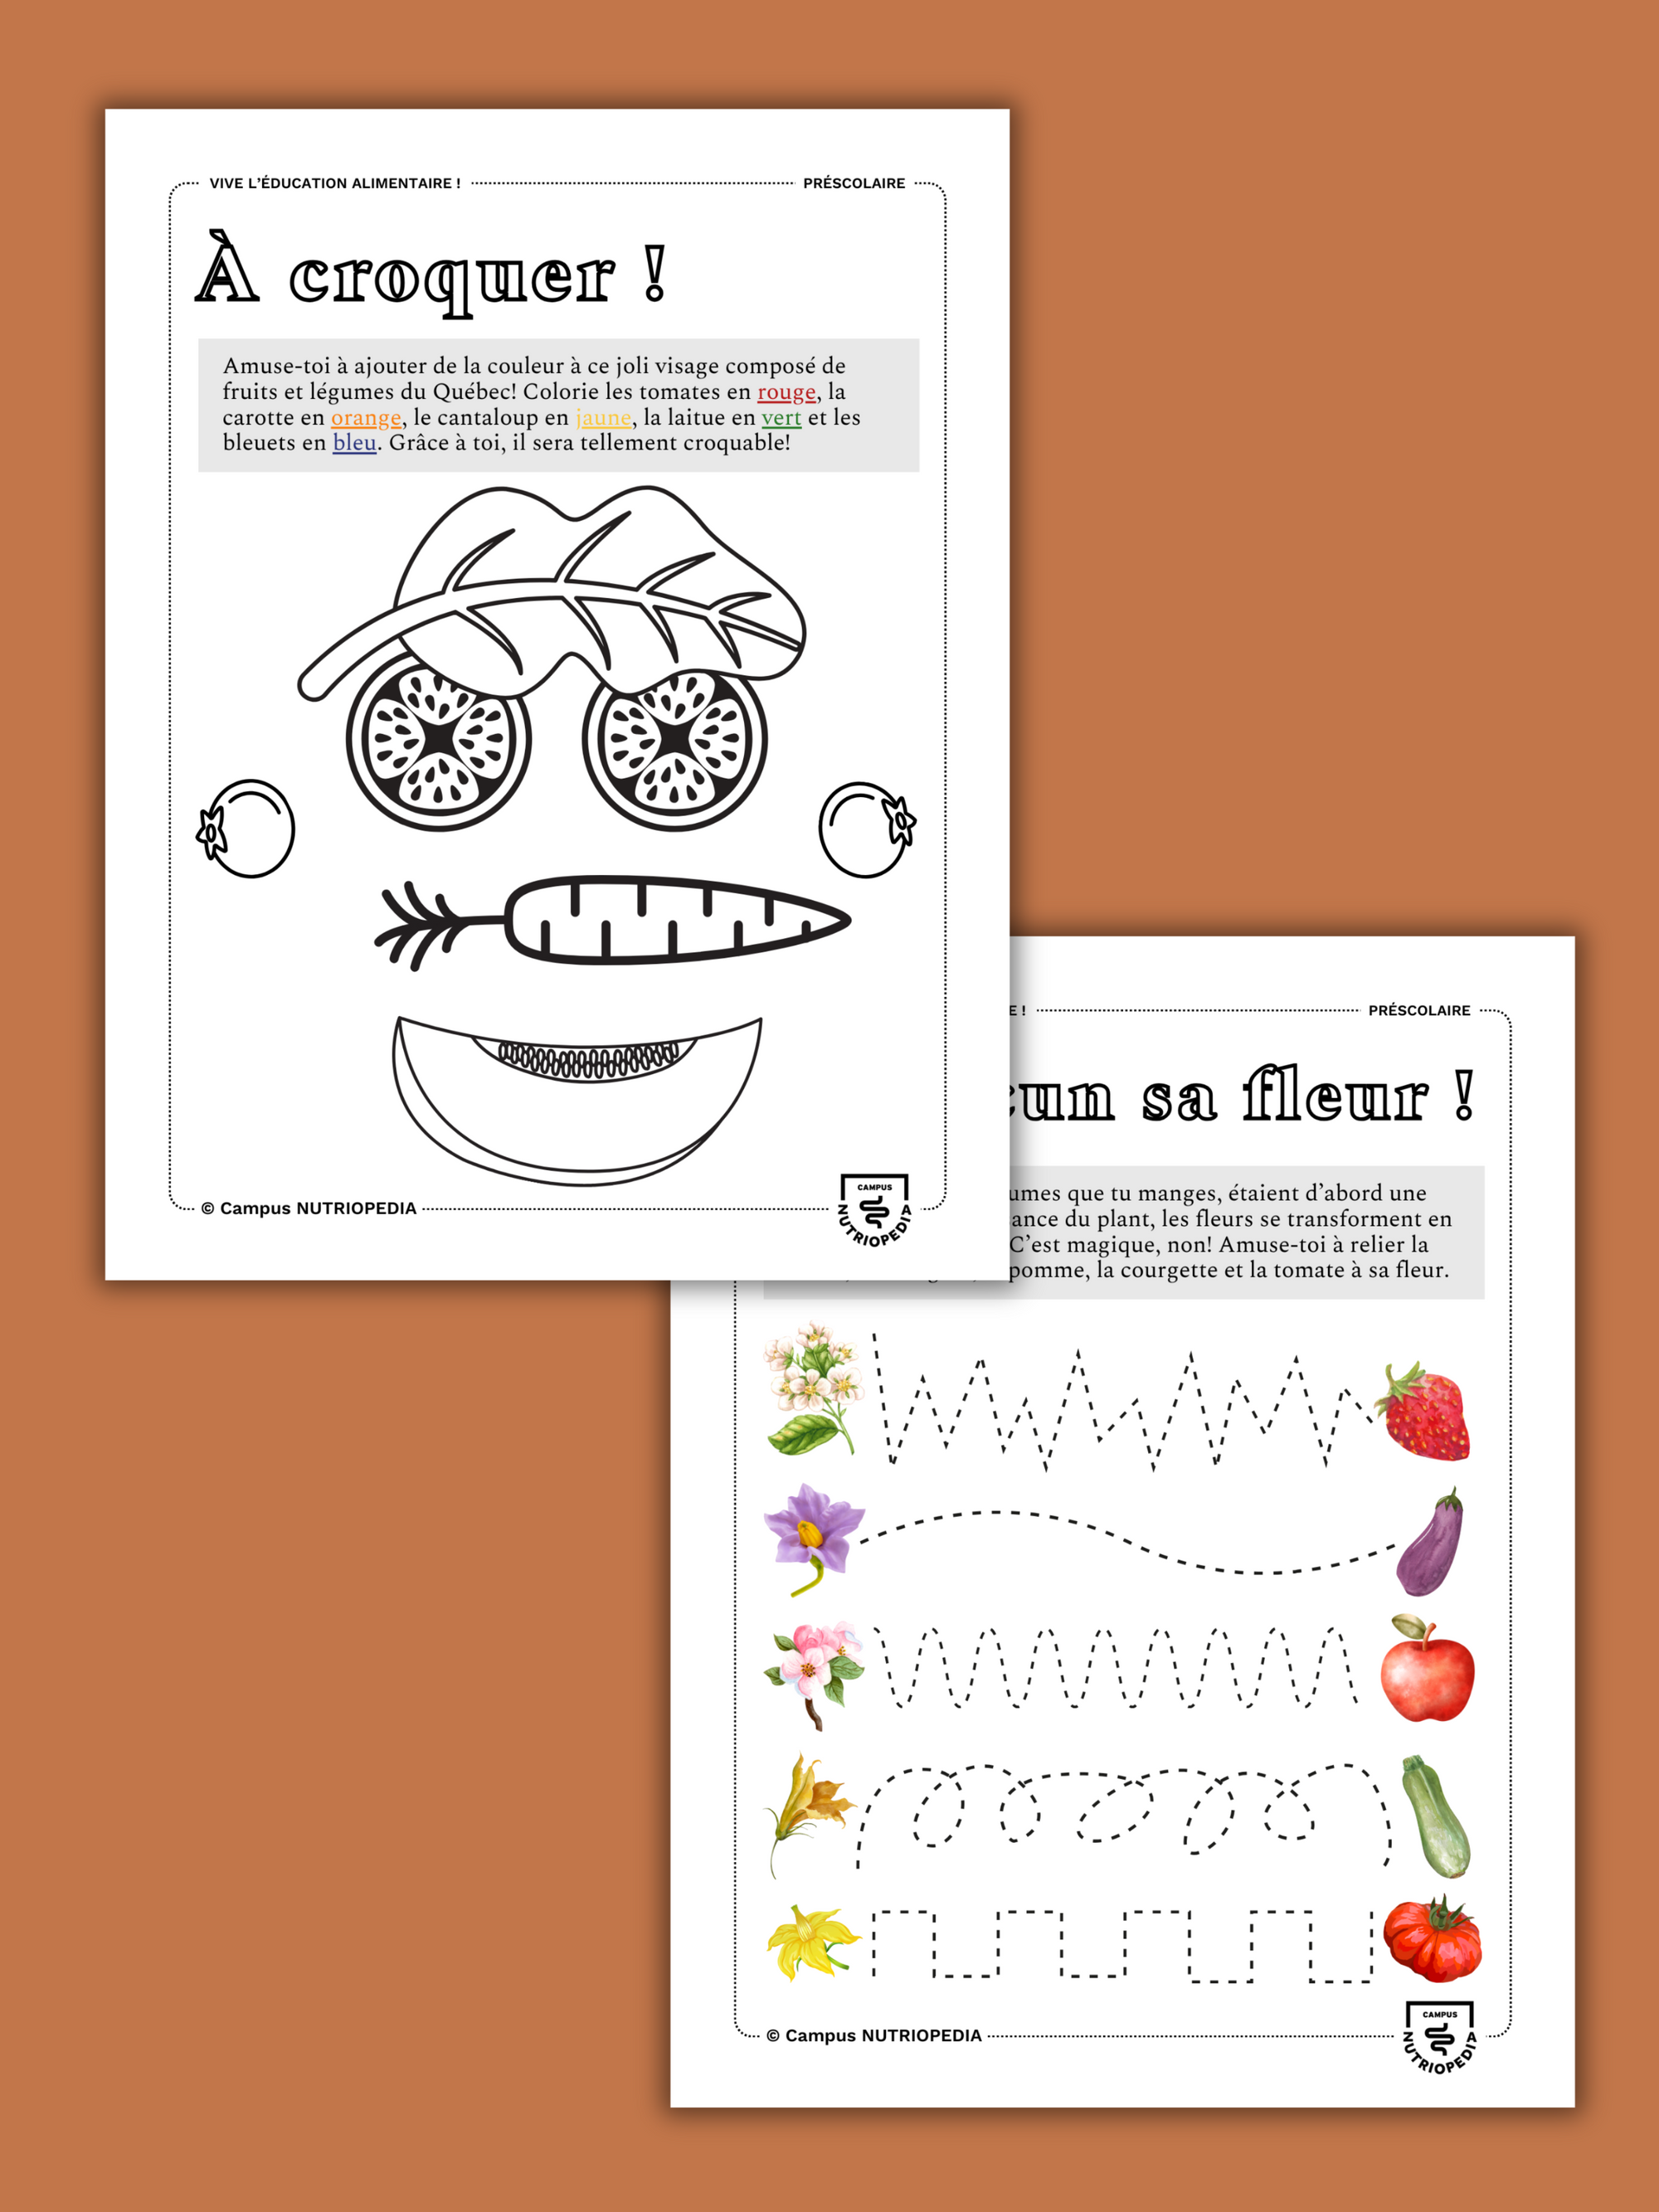 Cahier d'activités à imprimer pour l'éducation alimentaire - Visite au potager!